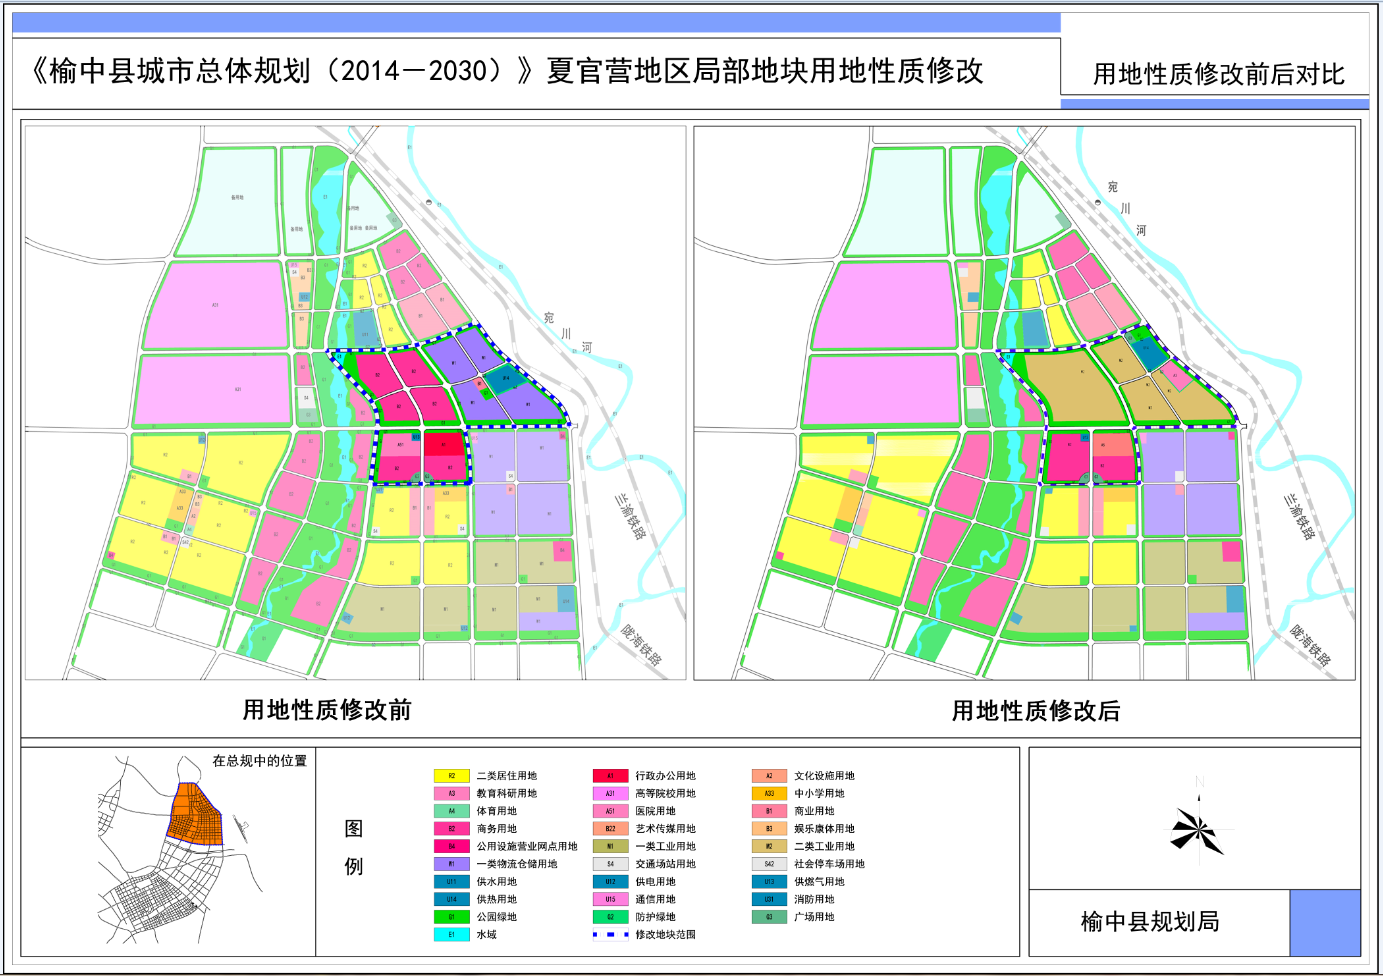 榆中县城市总体规划局部用地调整 涉及夏官营三角